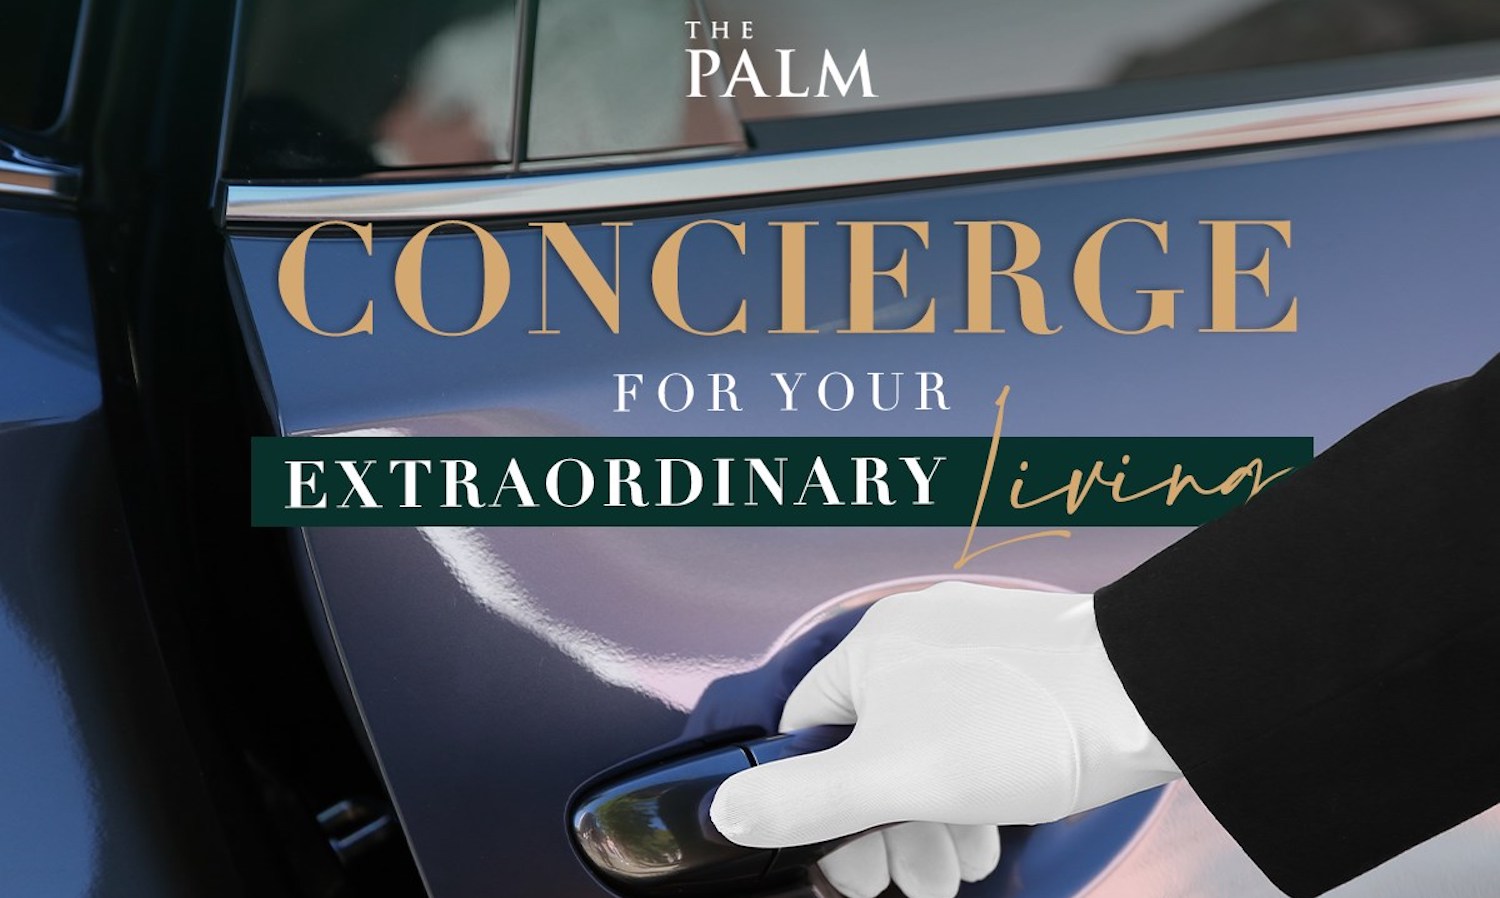 พฤกษา ยกระดับการบริการไปอีกขั้น มอบบริบทใหม่แห่งการใช้ชีวิตที่สมบูรณ์แบบ ด้วย The Palm Concierge บริการเลขาส่วนตัว 24 ชม.